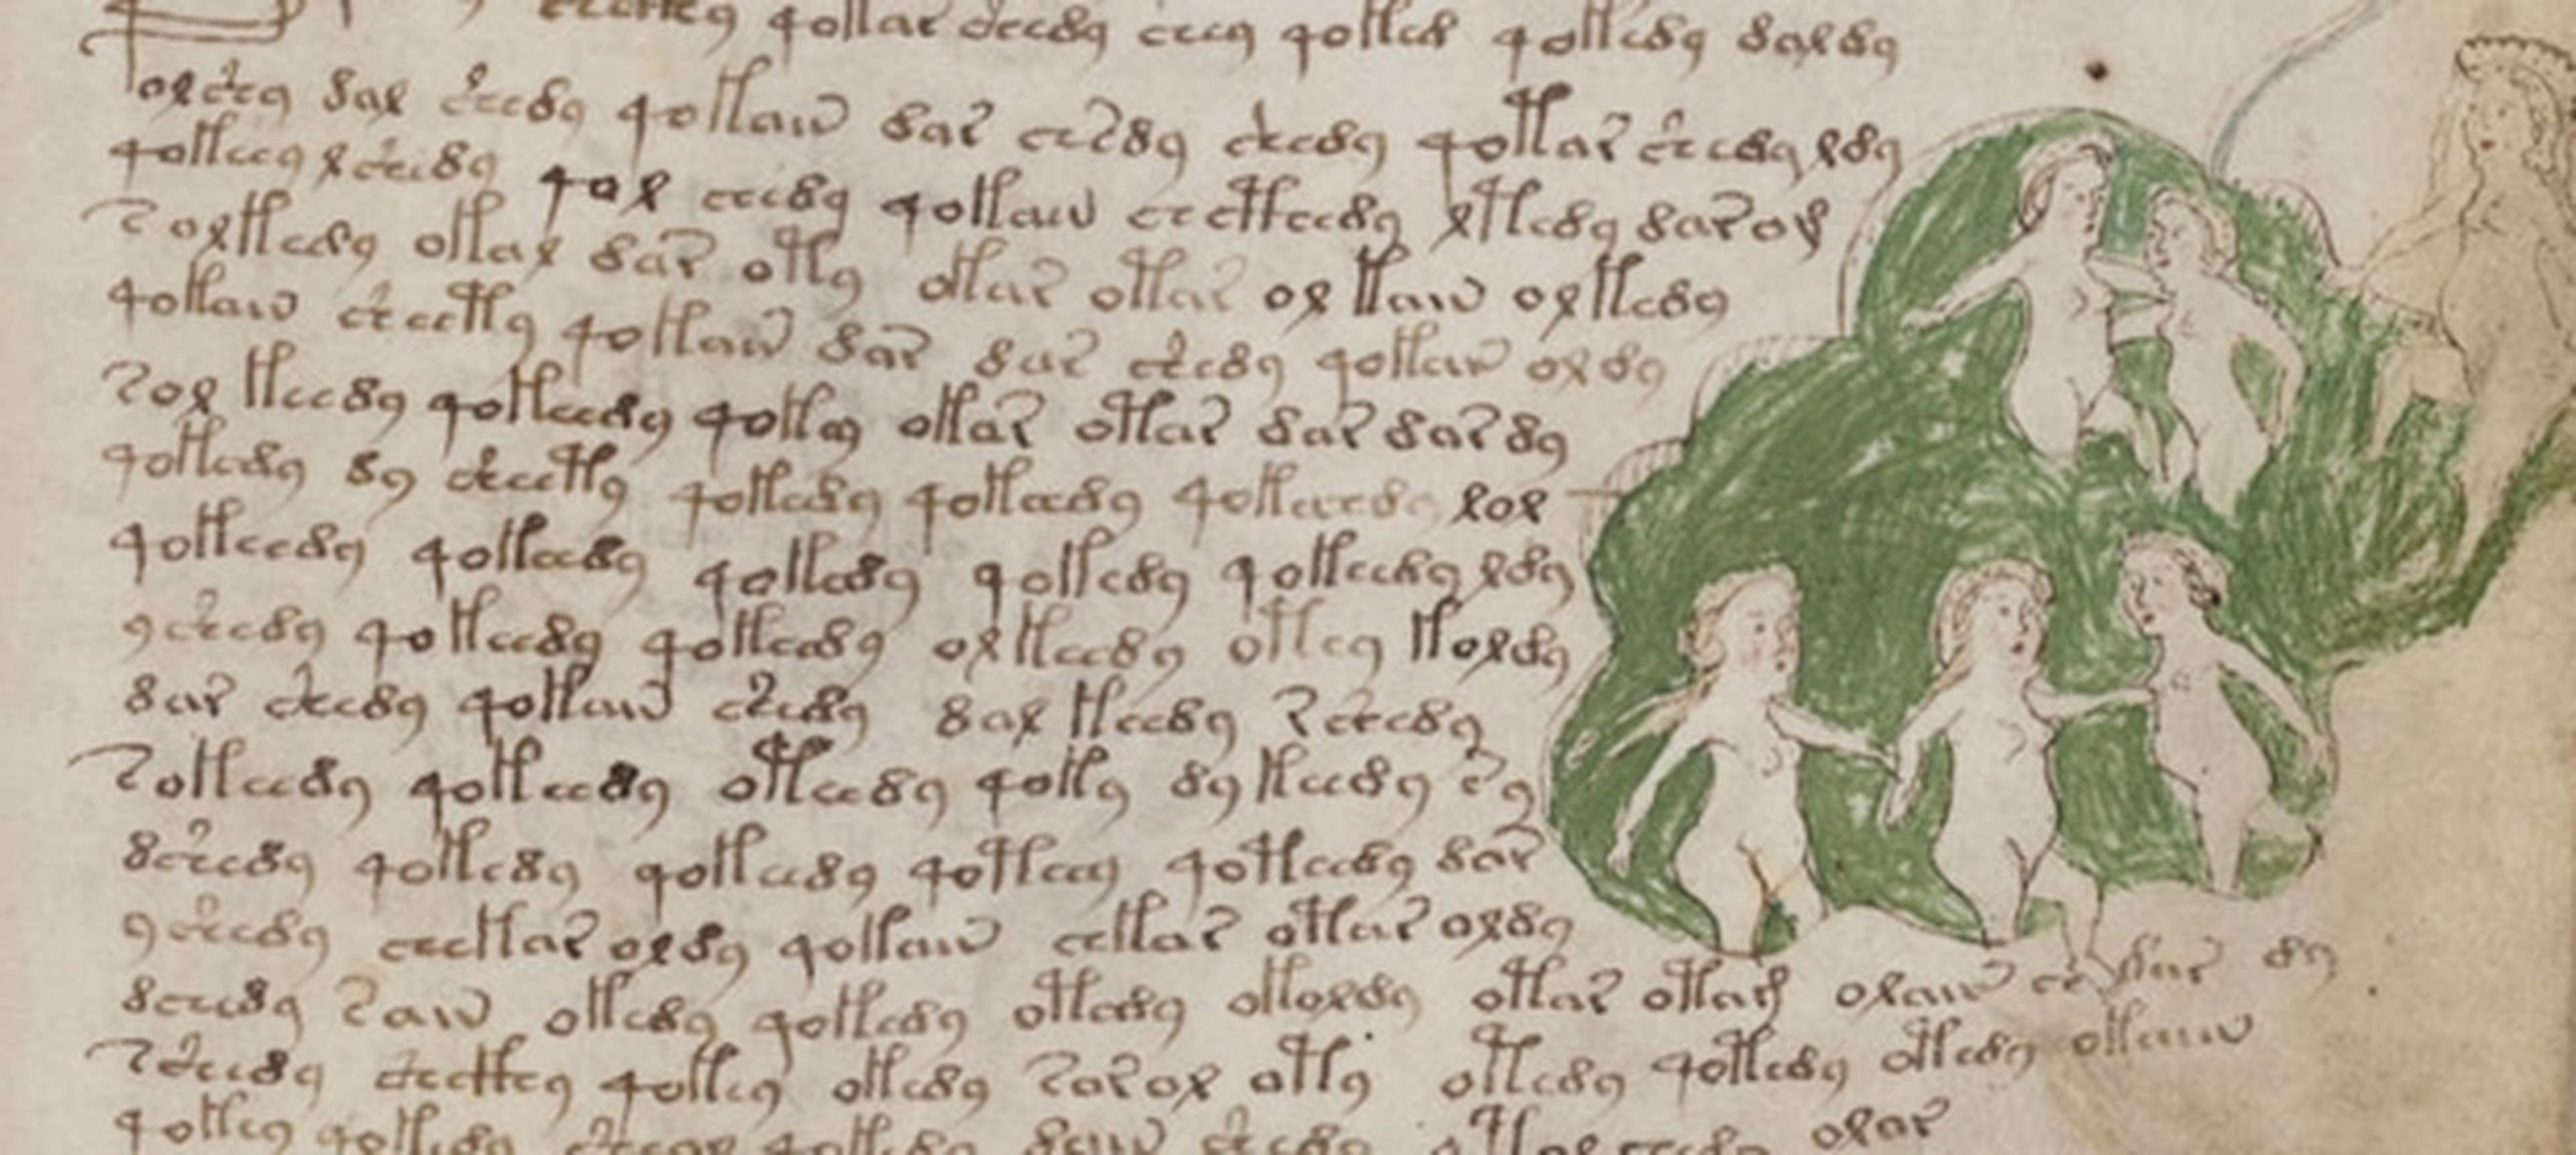 138687 codice voynich libro mas raro mundo copiara burgos - El códice Voynich, el libro más raro del mundo, se copiará en Burgos